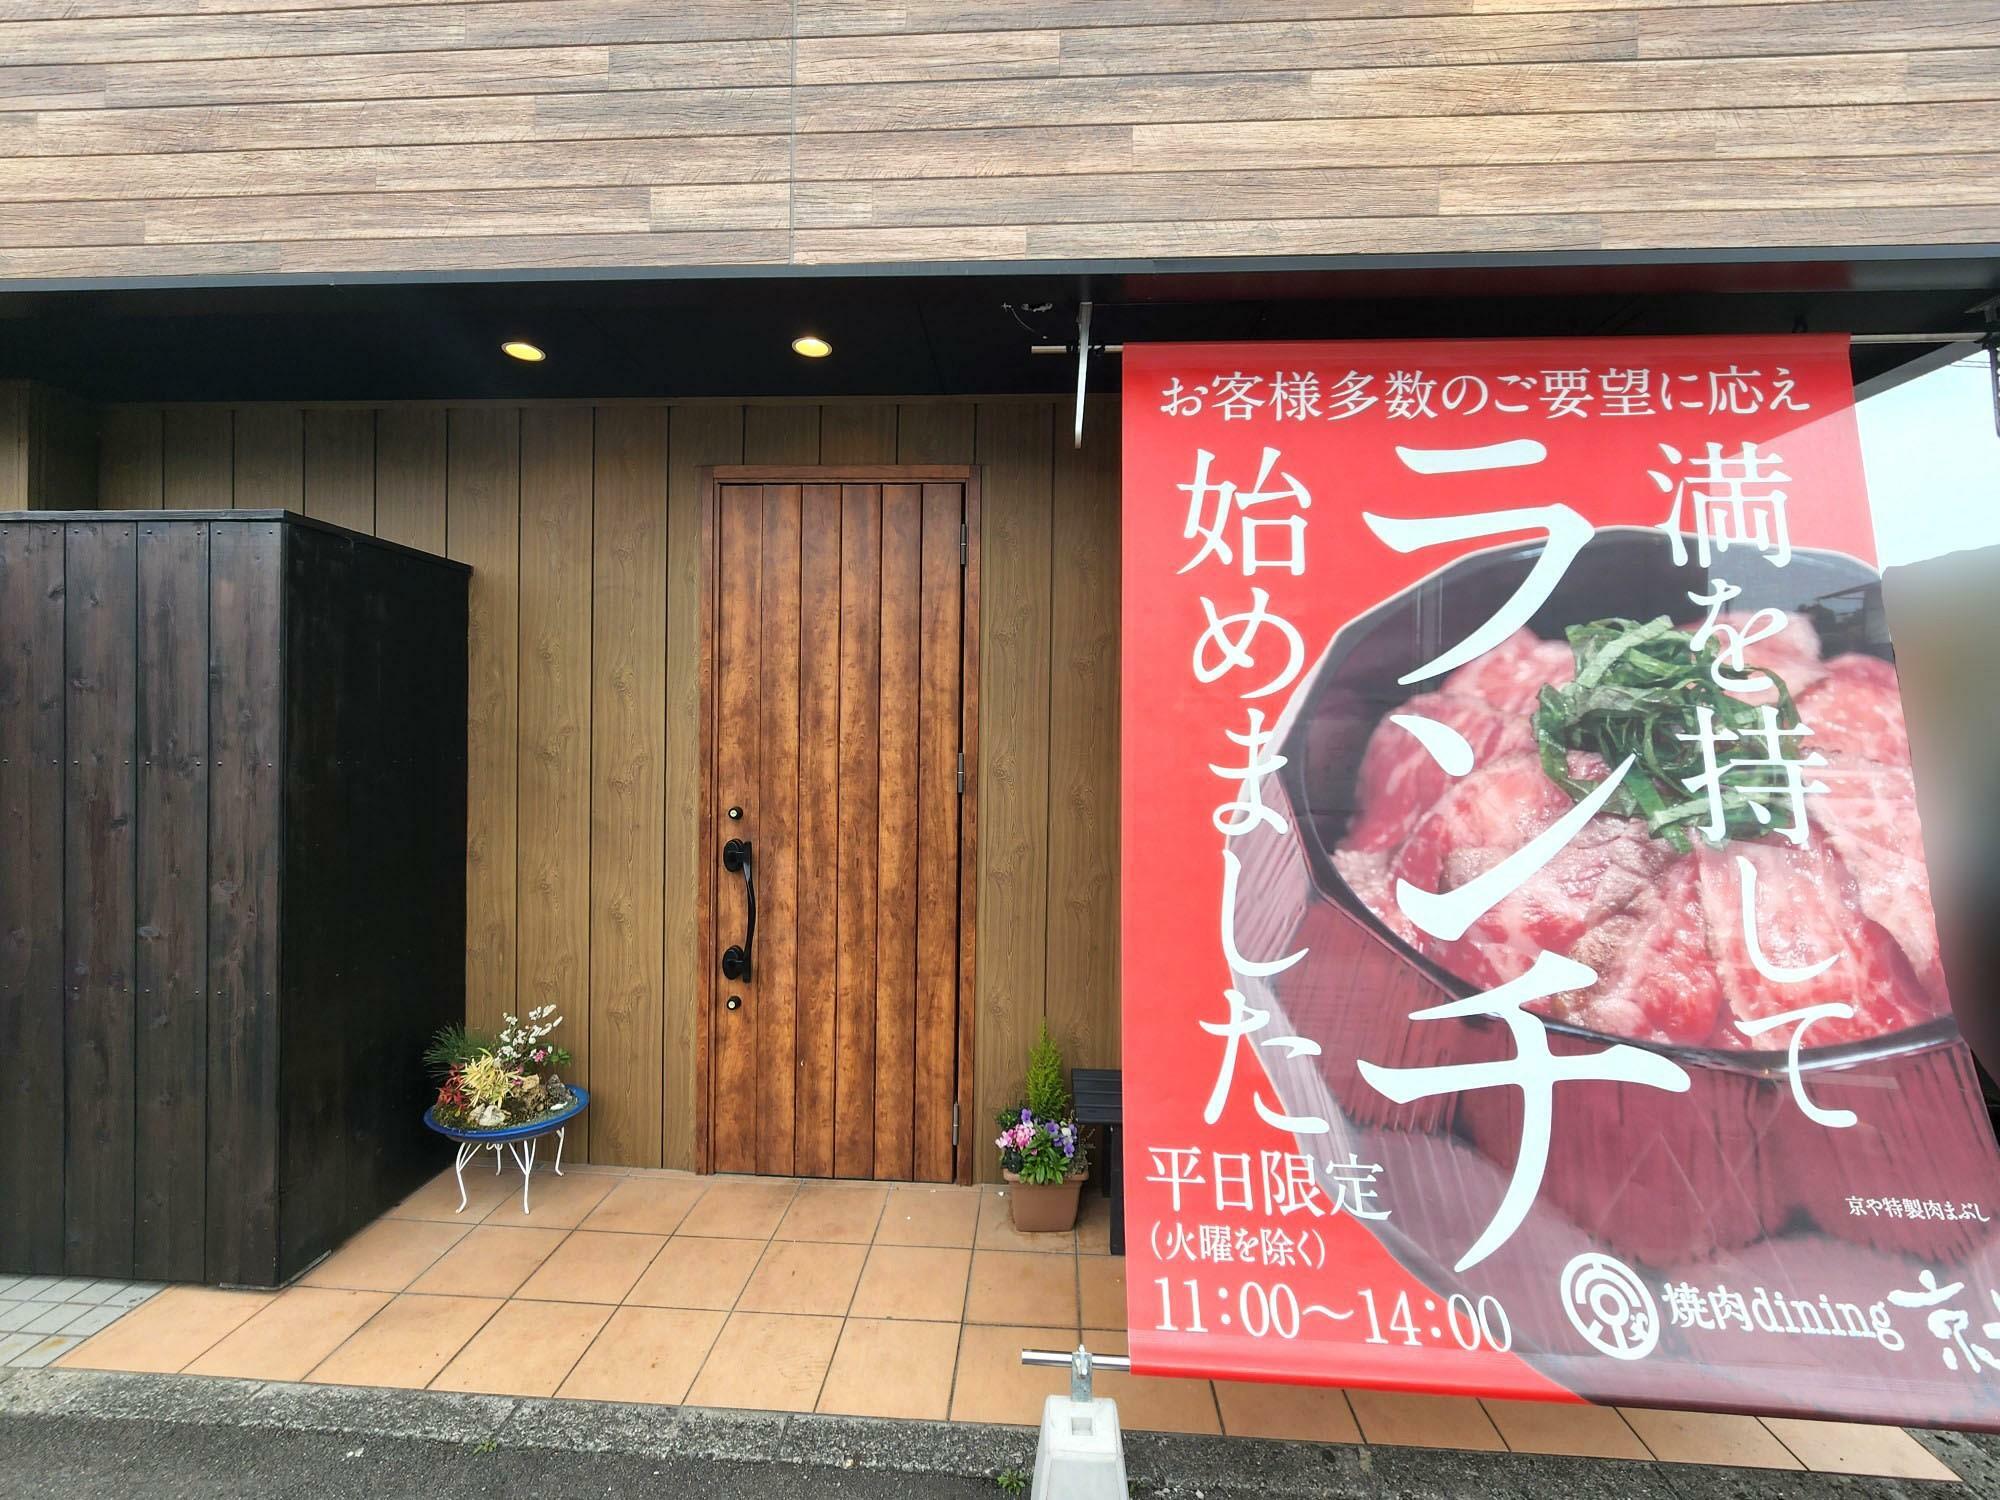 「焼肉dining京や 本店」店舗外観。